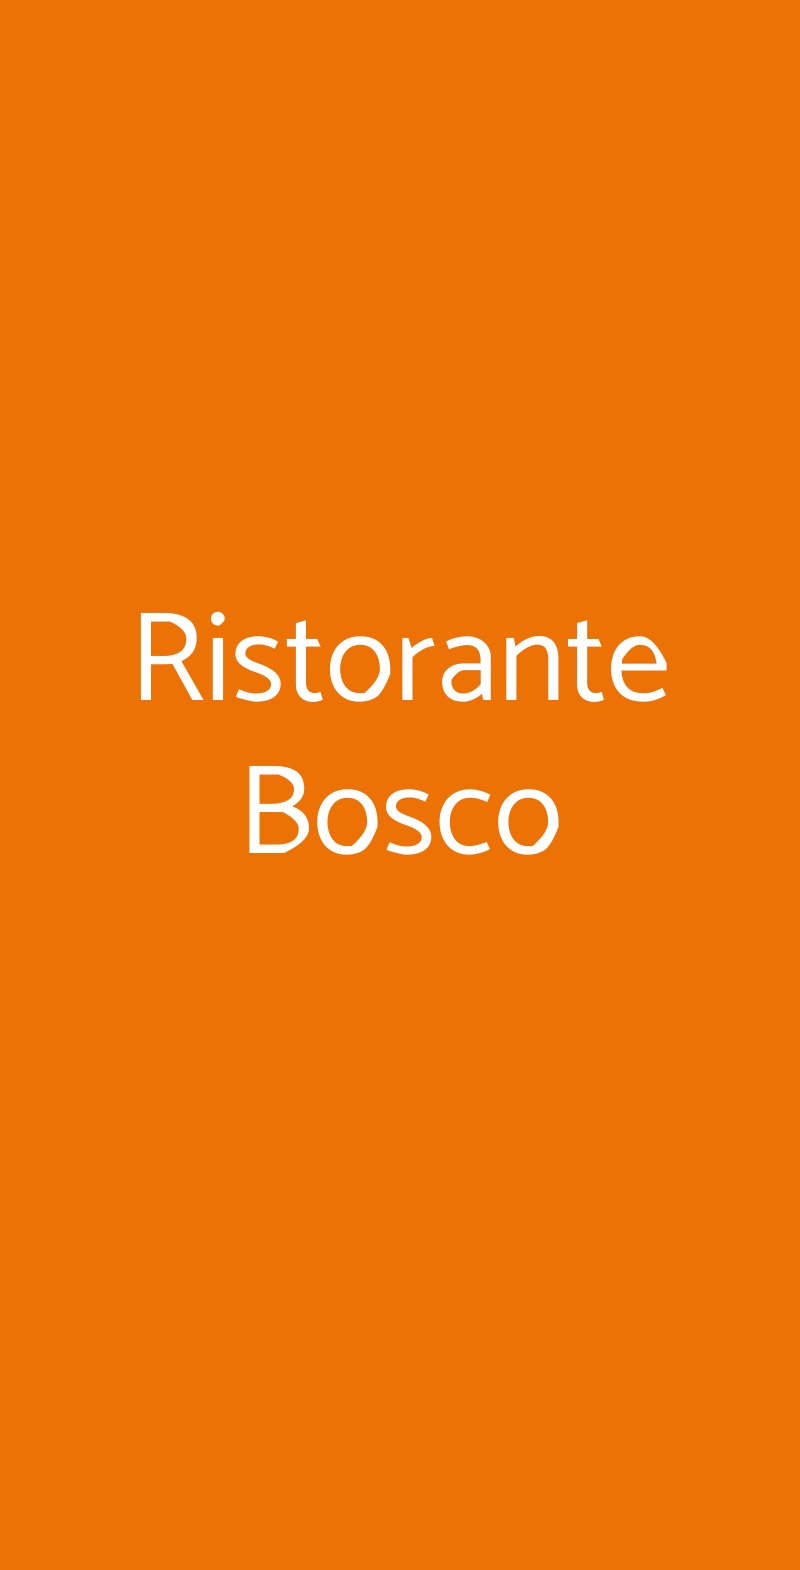 Ristorante Bosco Scandiano menù 1 pagina